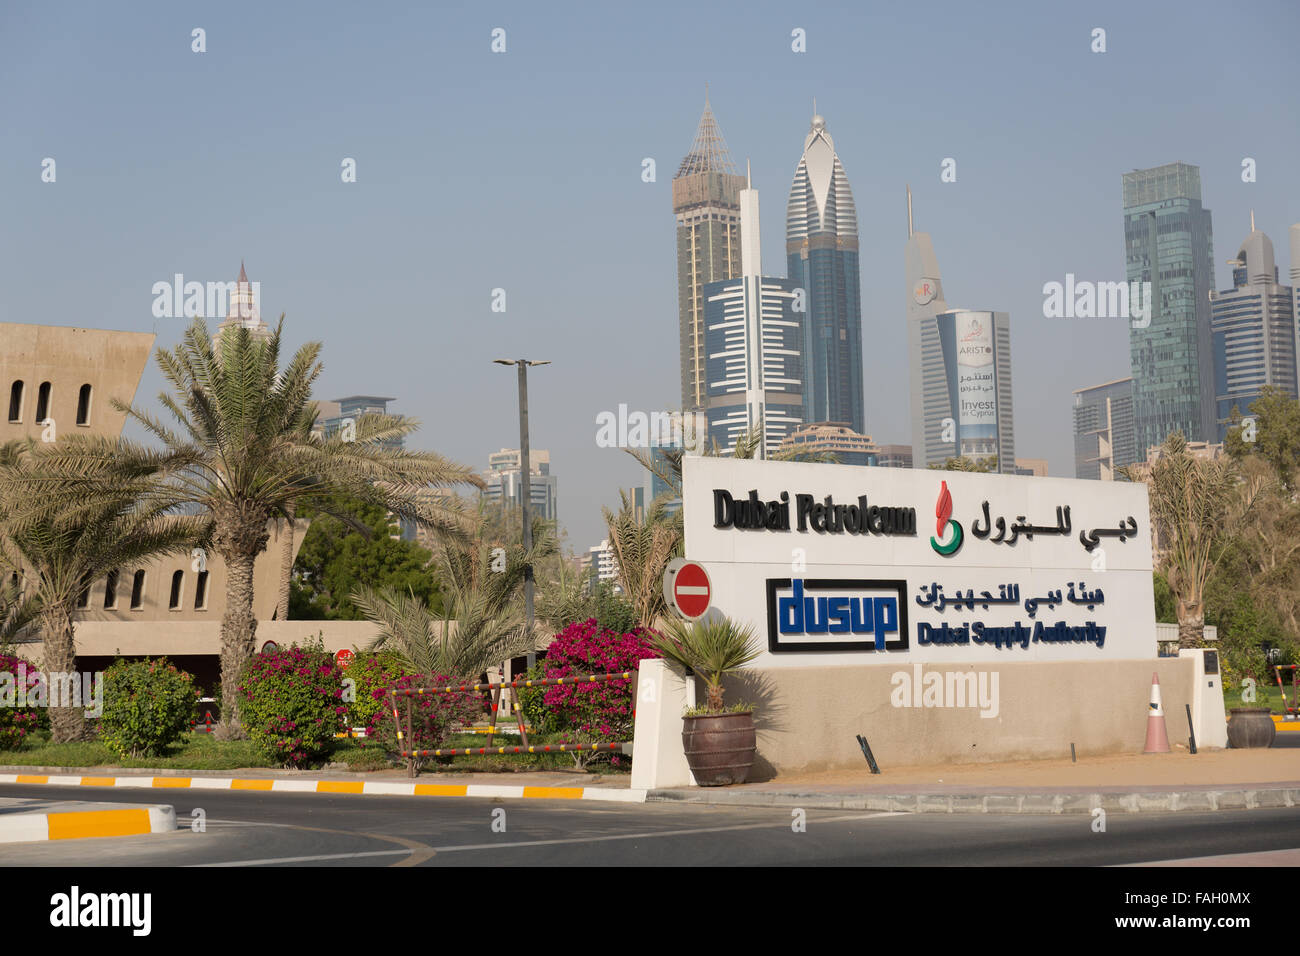 Dubai Petroleum office, Dubai UAE Stock Photo - Alamy